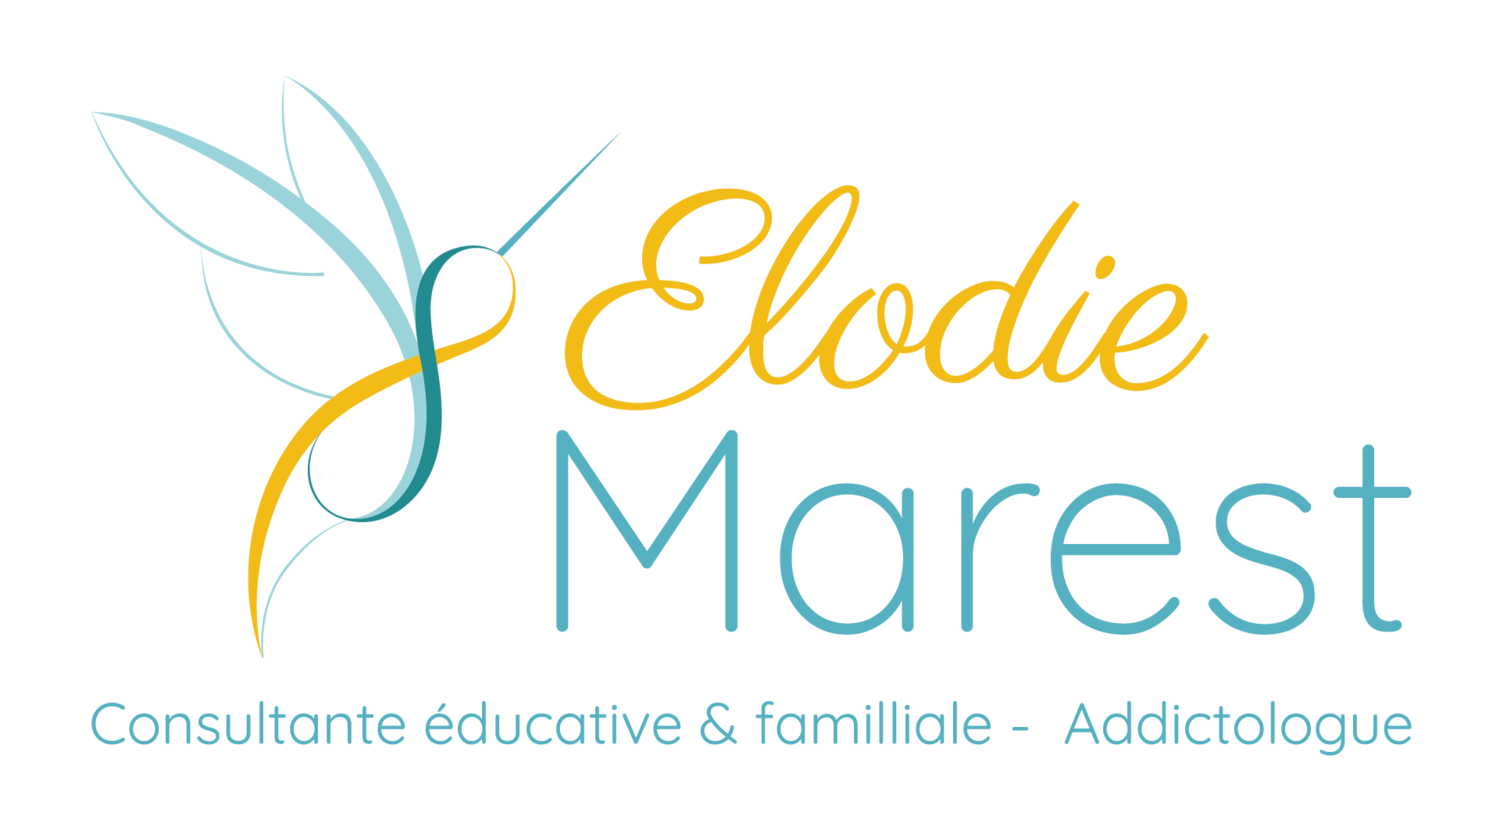 Elodie Marest, Consultante éducative et familiale - Addictologue